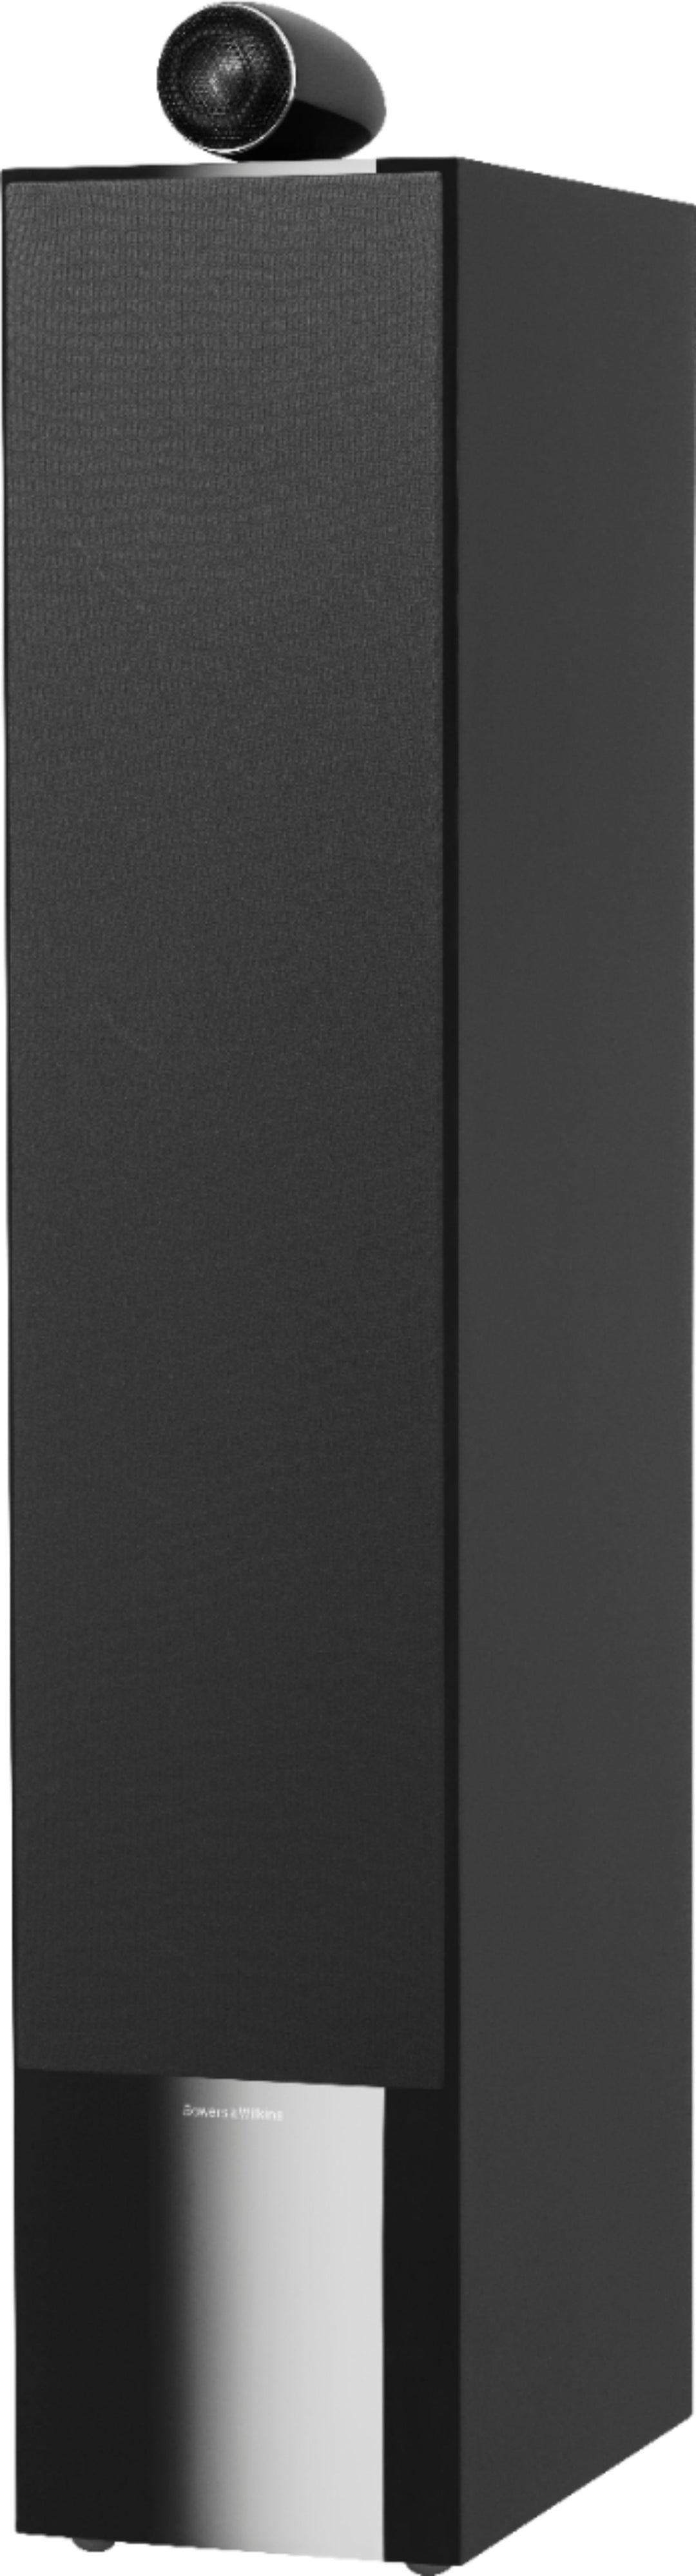 Bowers & Wilkins - 700 Series 3-way Floorstanding Speaker w/ Tweeter on top, w/6" midrange, three 6.5" bass drivers (each) - Gloss black_3